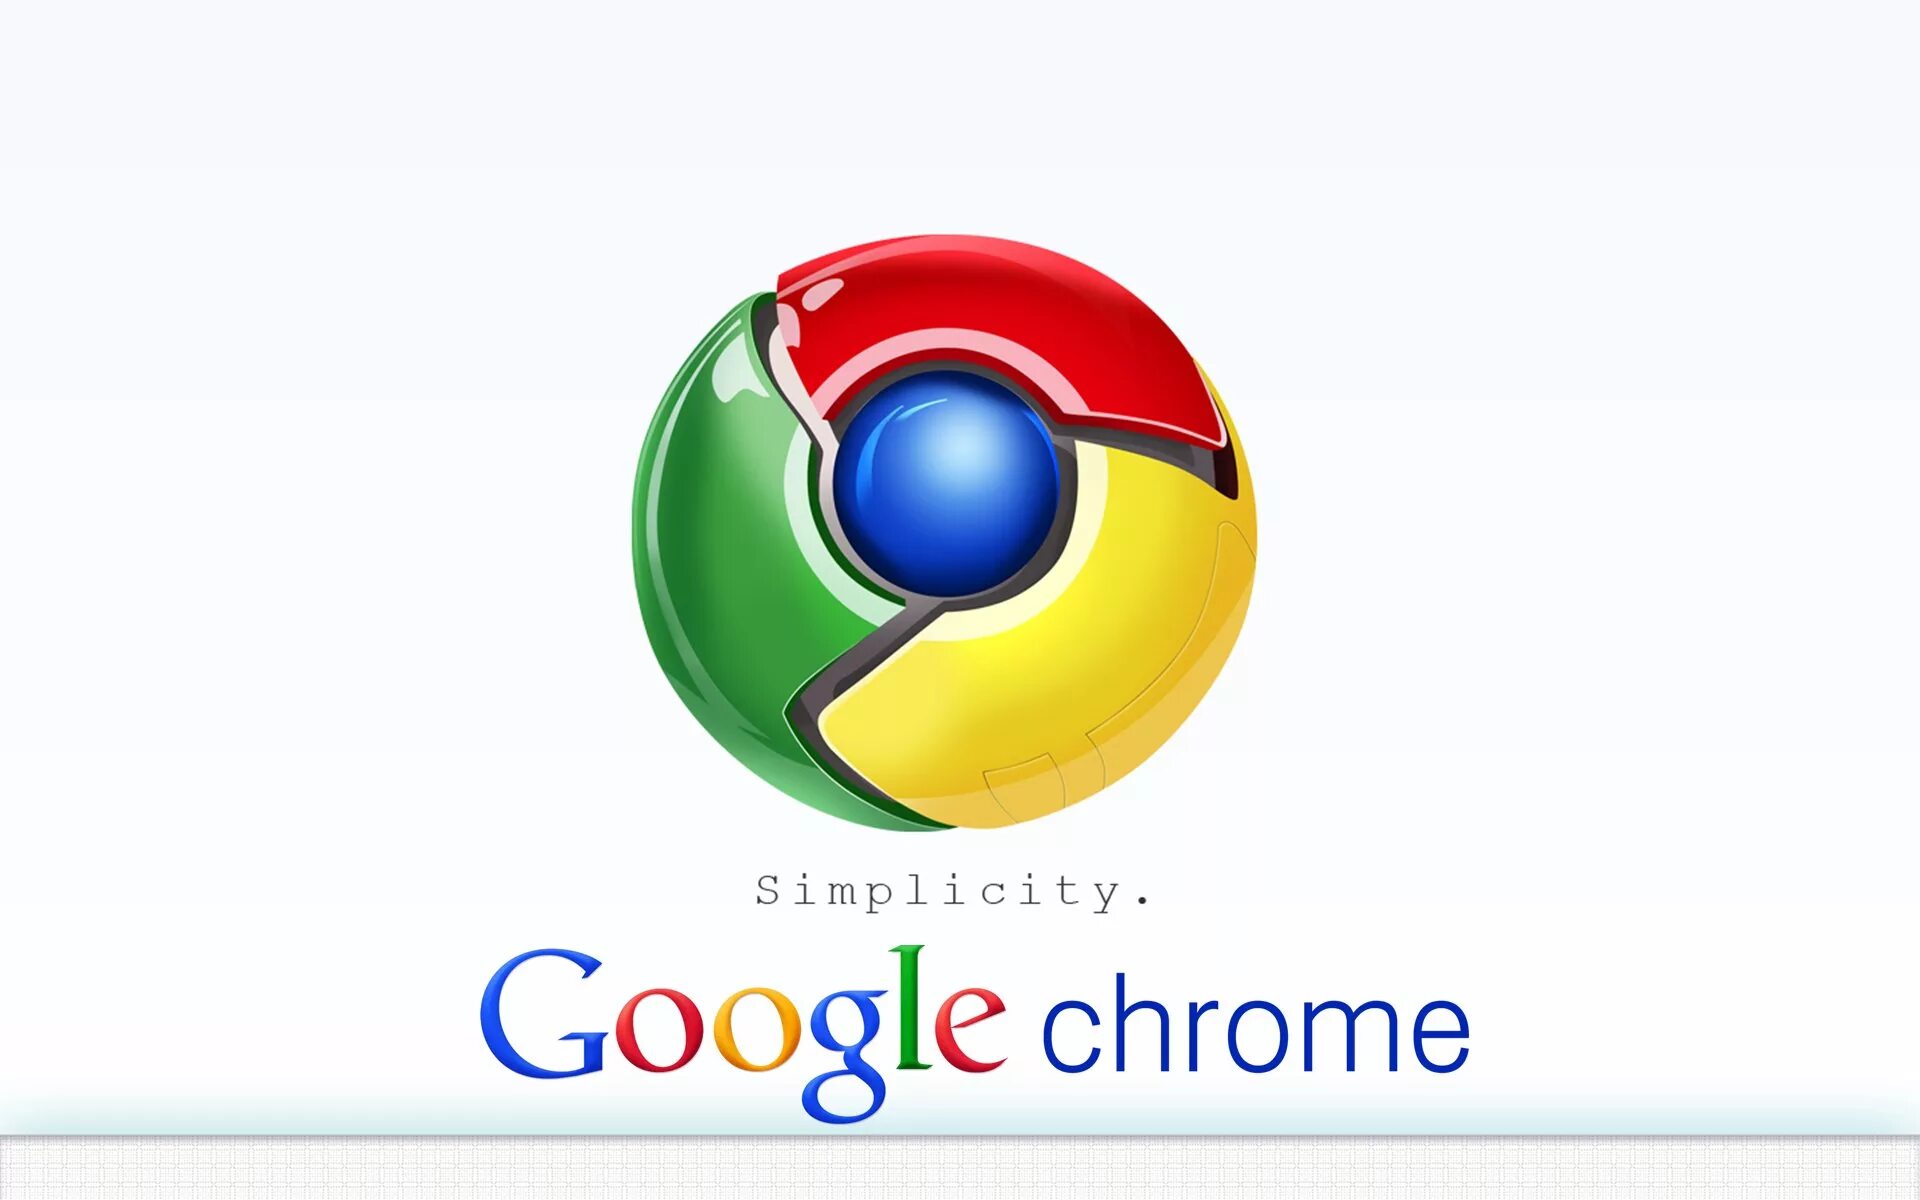 Гугл хром. Гугл браузер. Google frame. Google Chrome логотип.